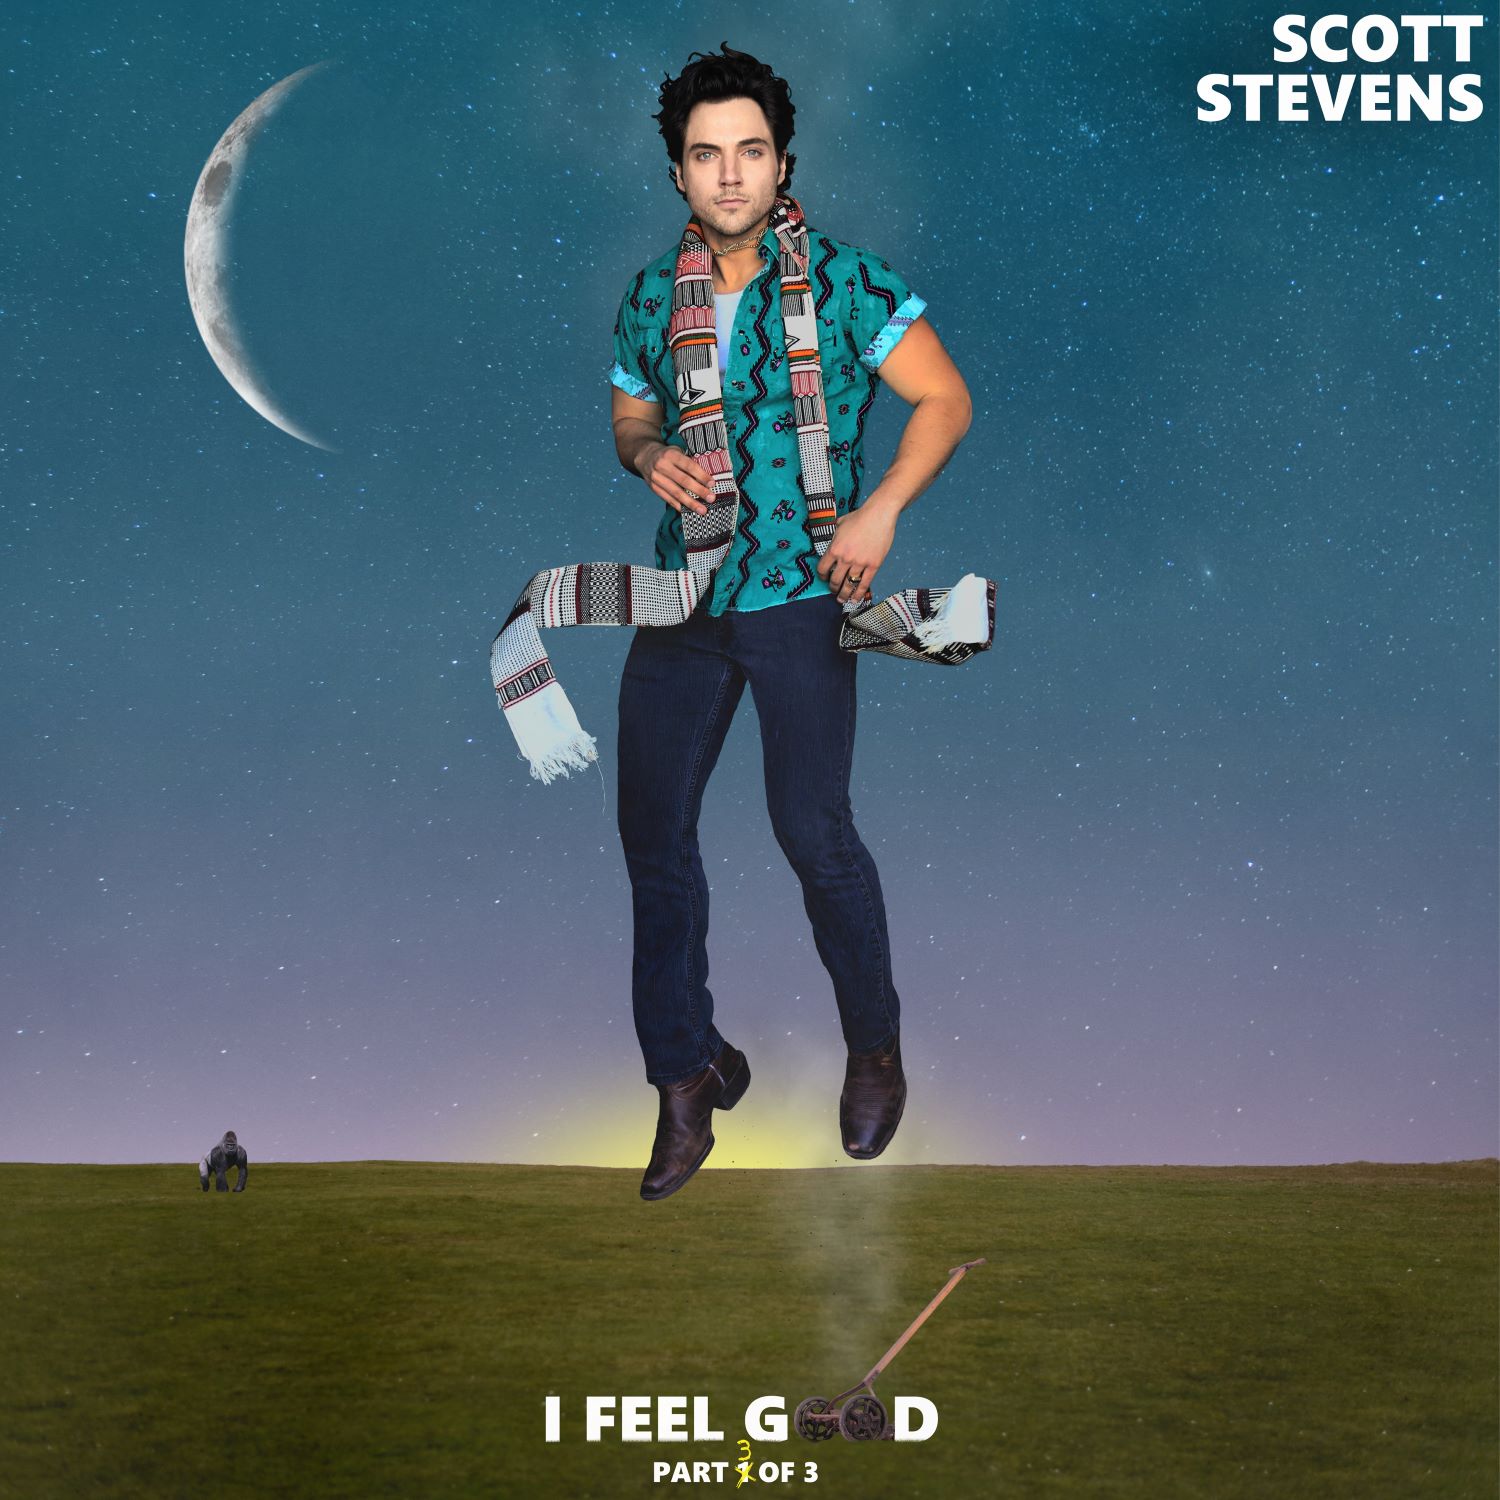 Scott Stevens - "I Feel Good" Album Artwork